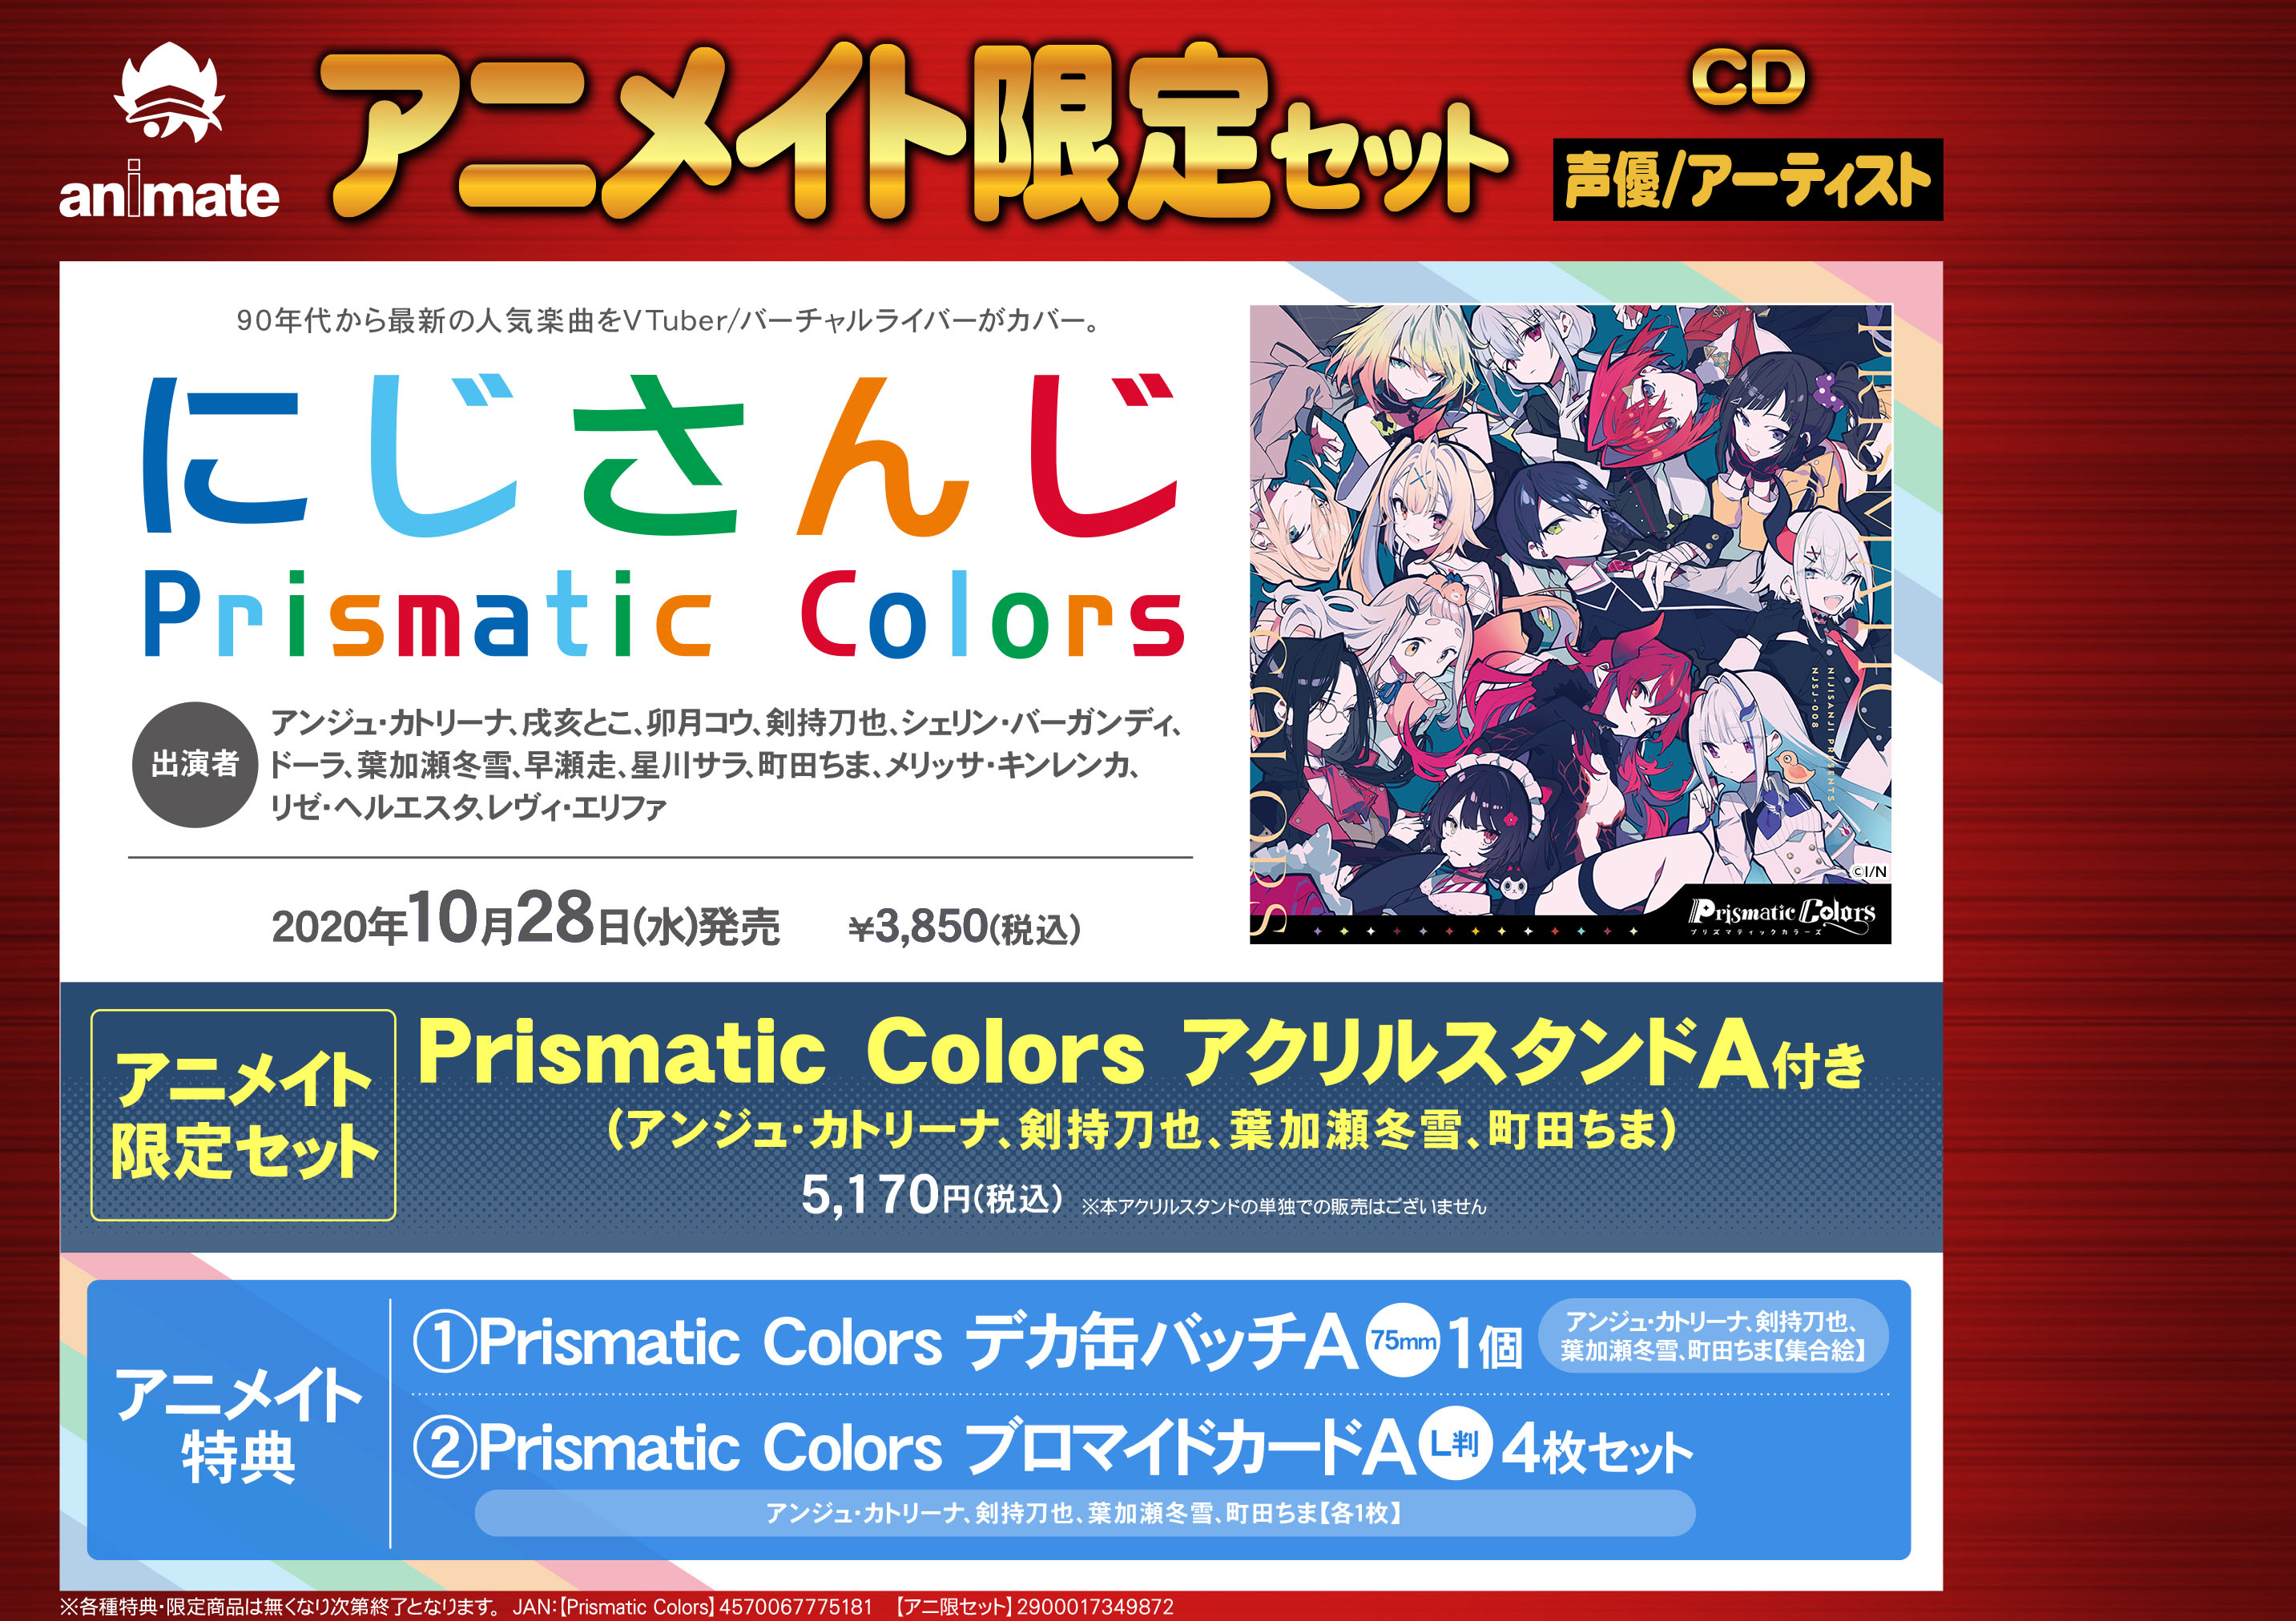 アニメイト富山 on X: "【予約情報】#にじさんじ 「Prismatic Colors